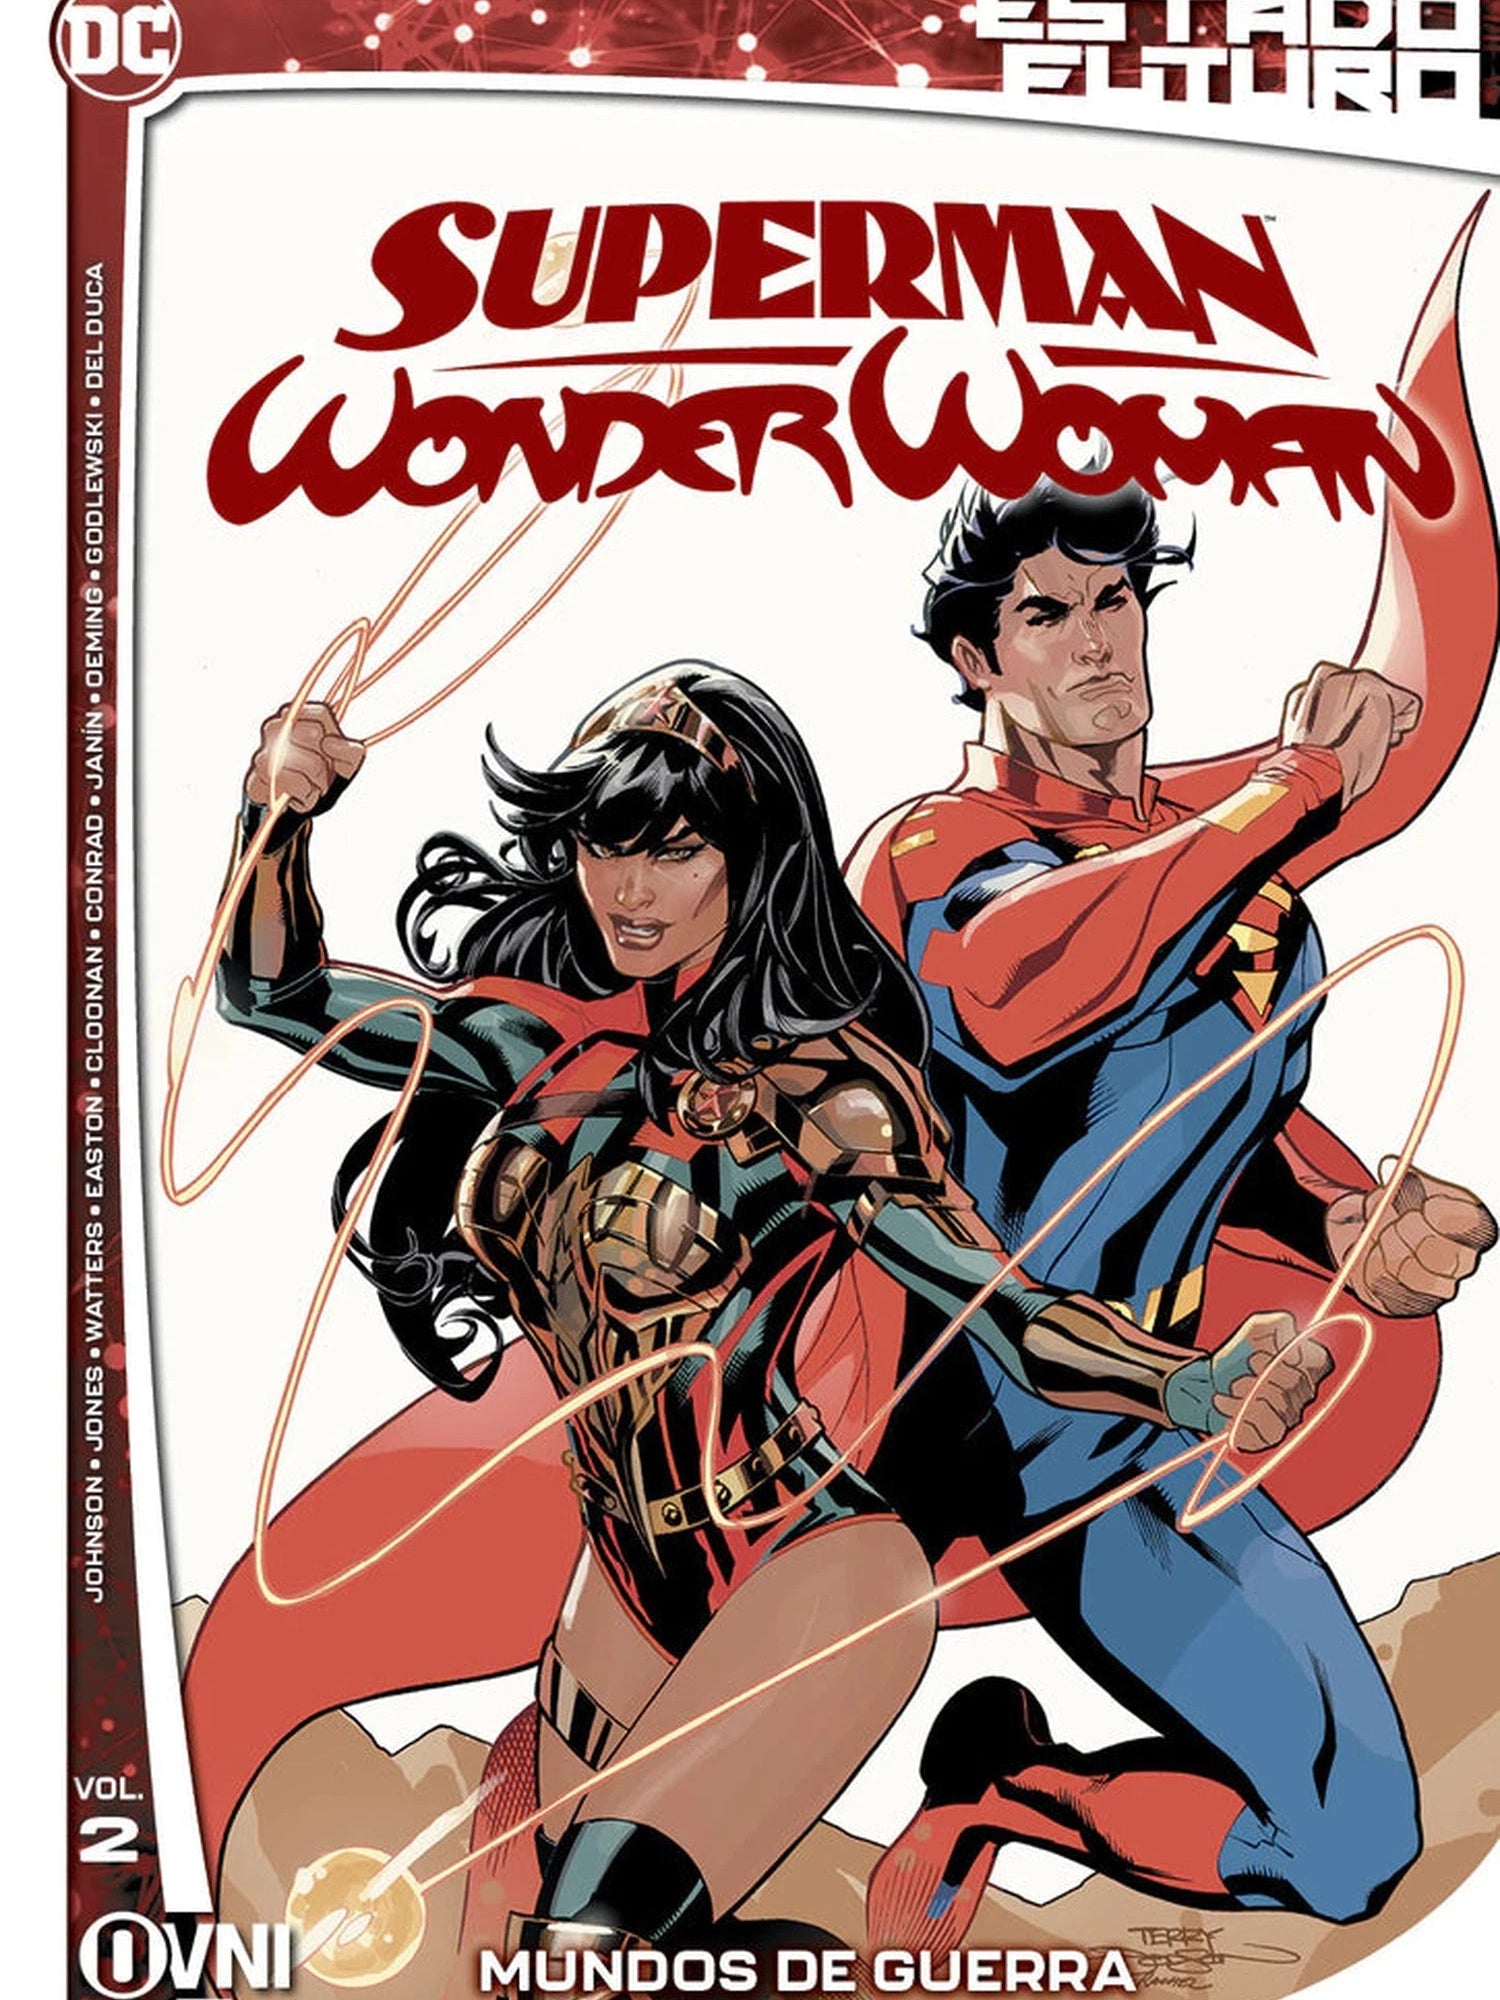 Pack Vol.1 Vol. 2 Estado Futuro: SUPERMAN/WONDER WOMAN OVNI Press ENcuadrocomics